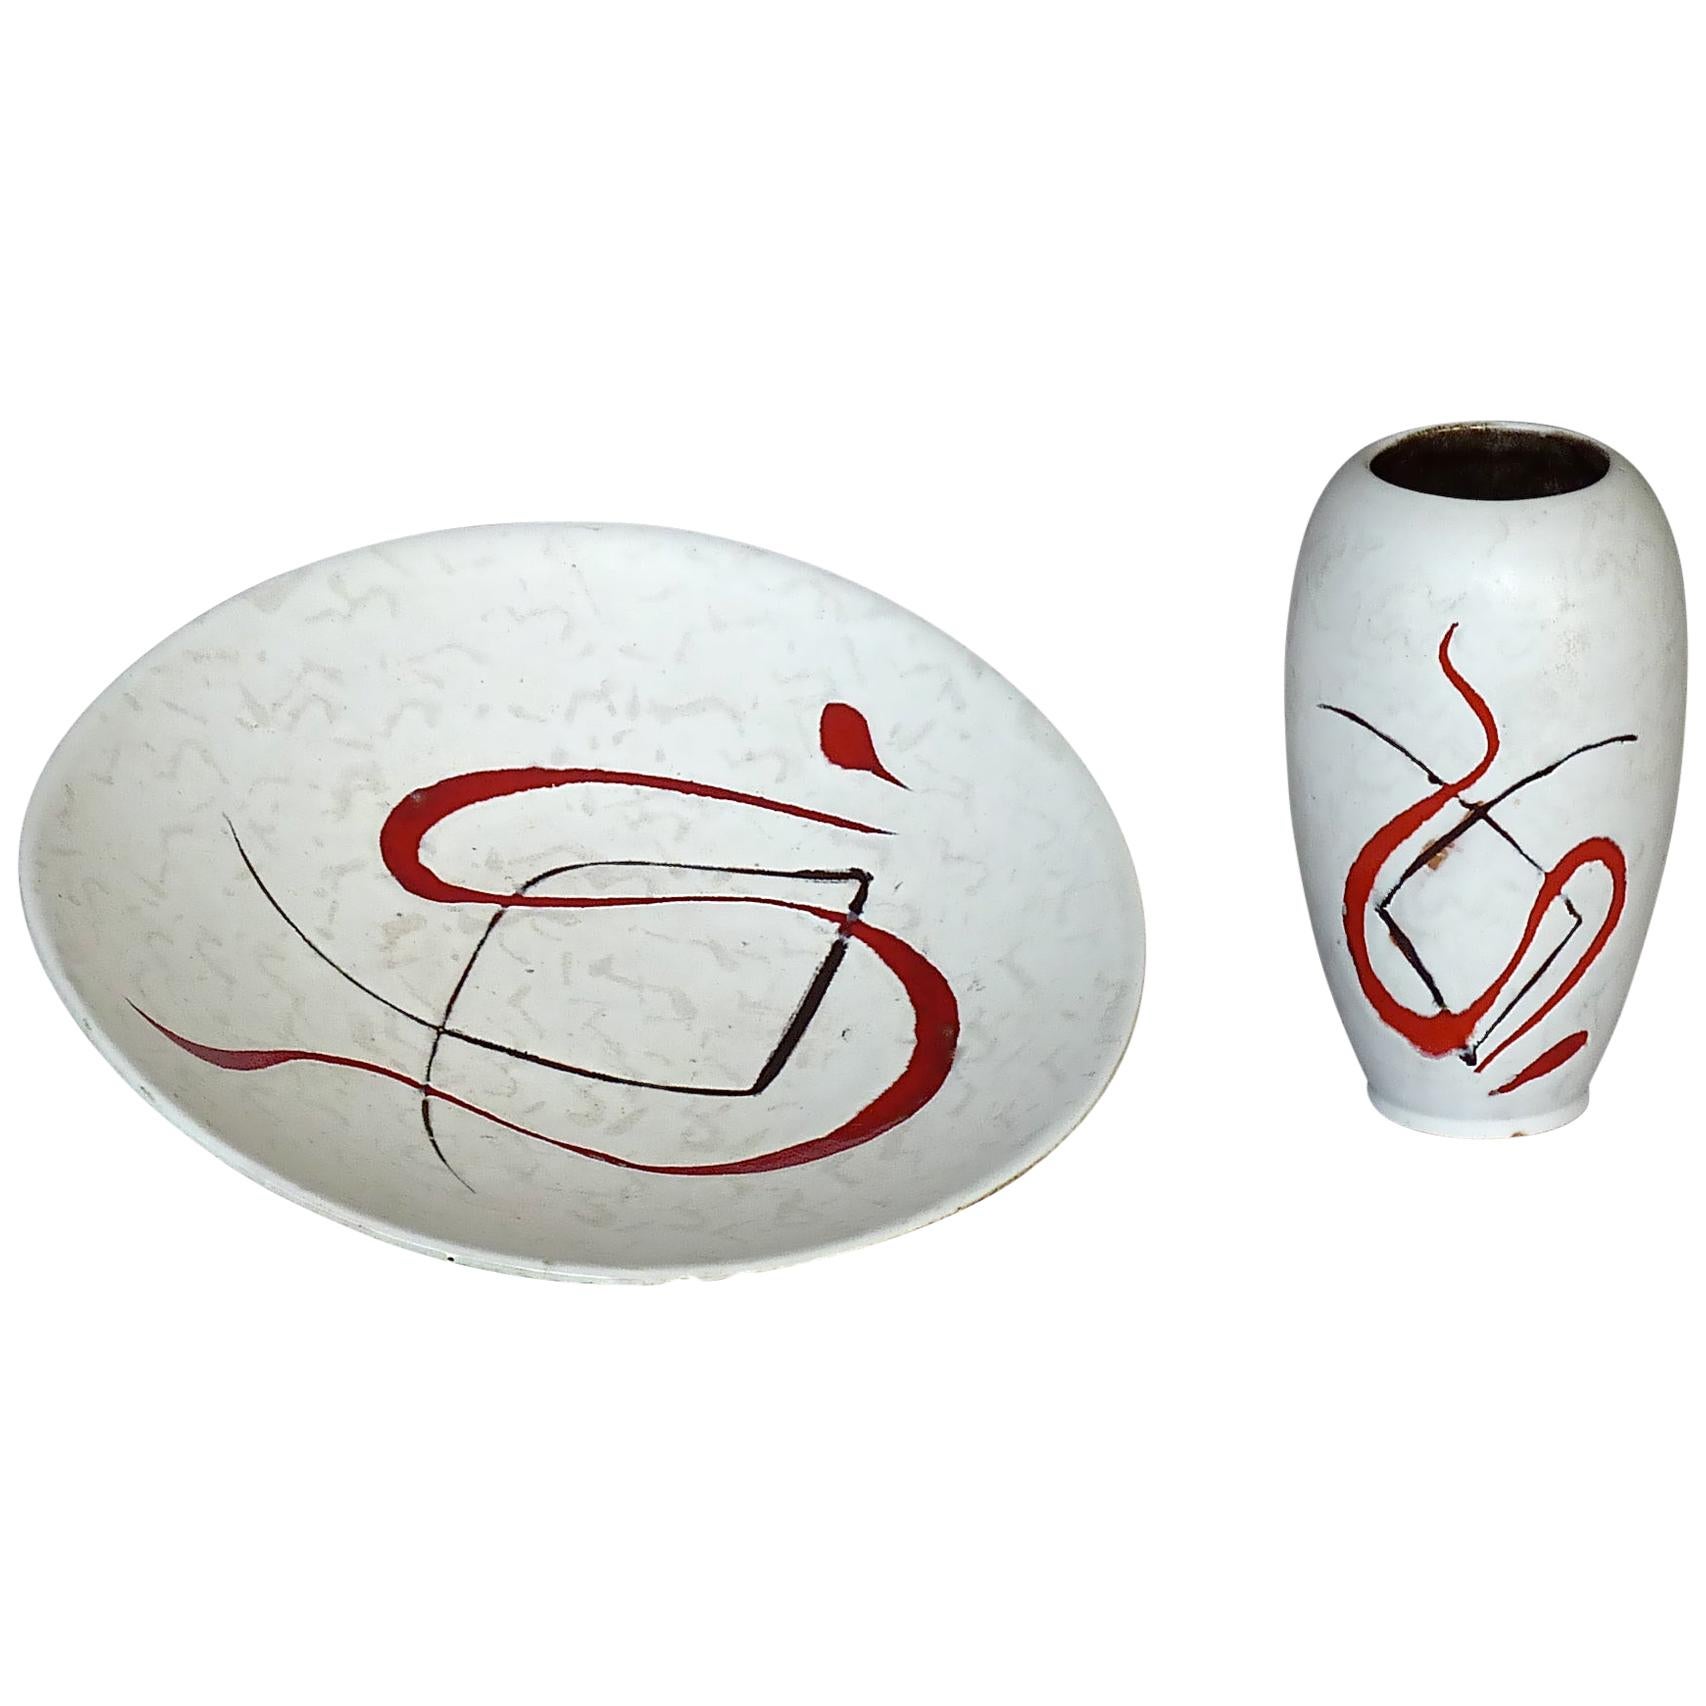 Abstrakte Midcentury Art Keramik Vase und Schale Gambone Miro Stil Weiß Rot 1950s